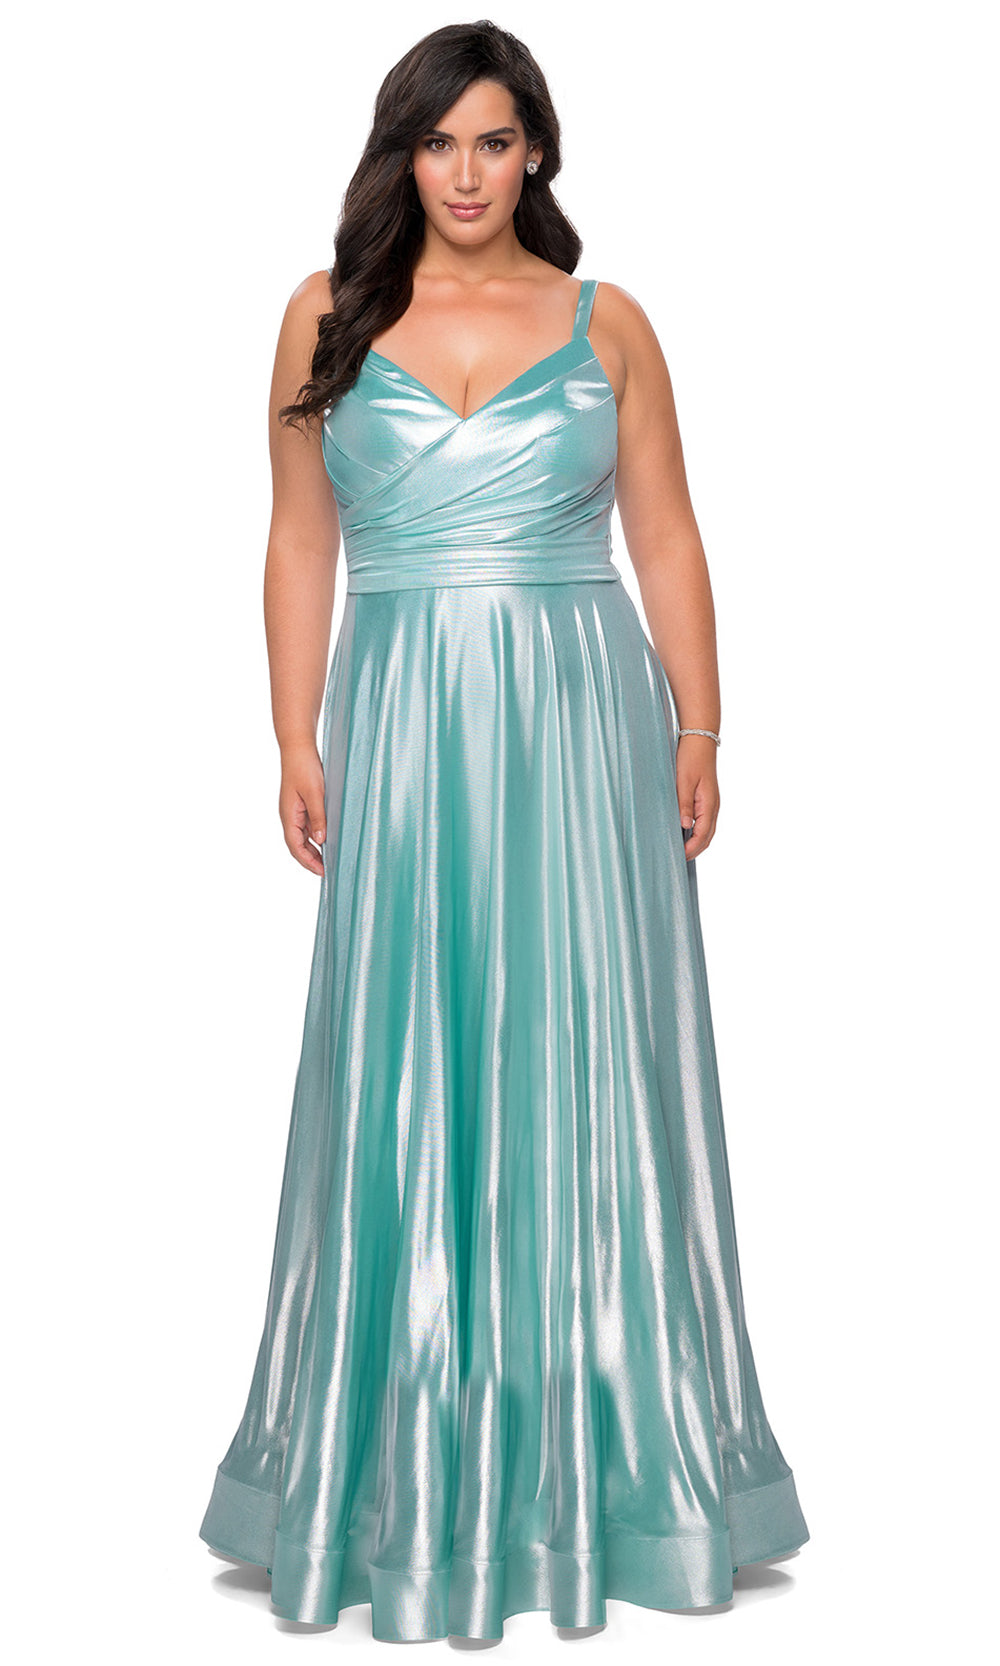 La Femme - 28989 Long Metallic Wrap Style A-Line Dress In Green